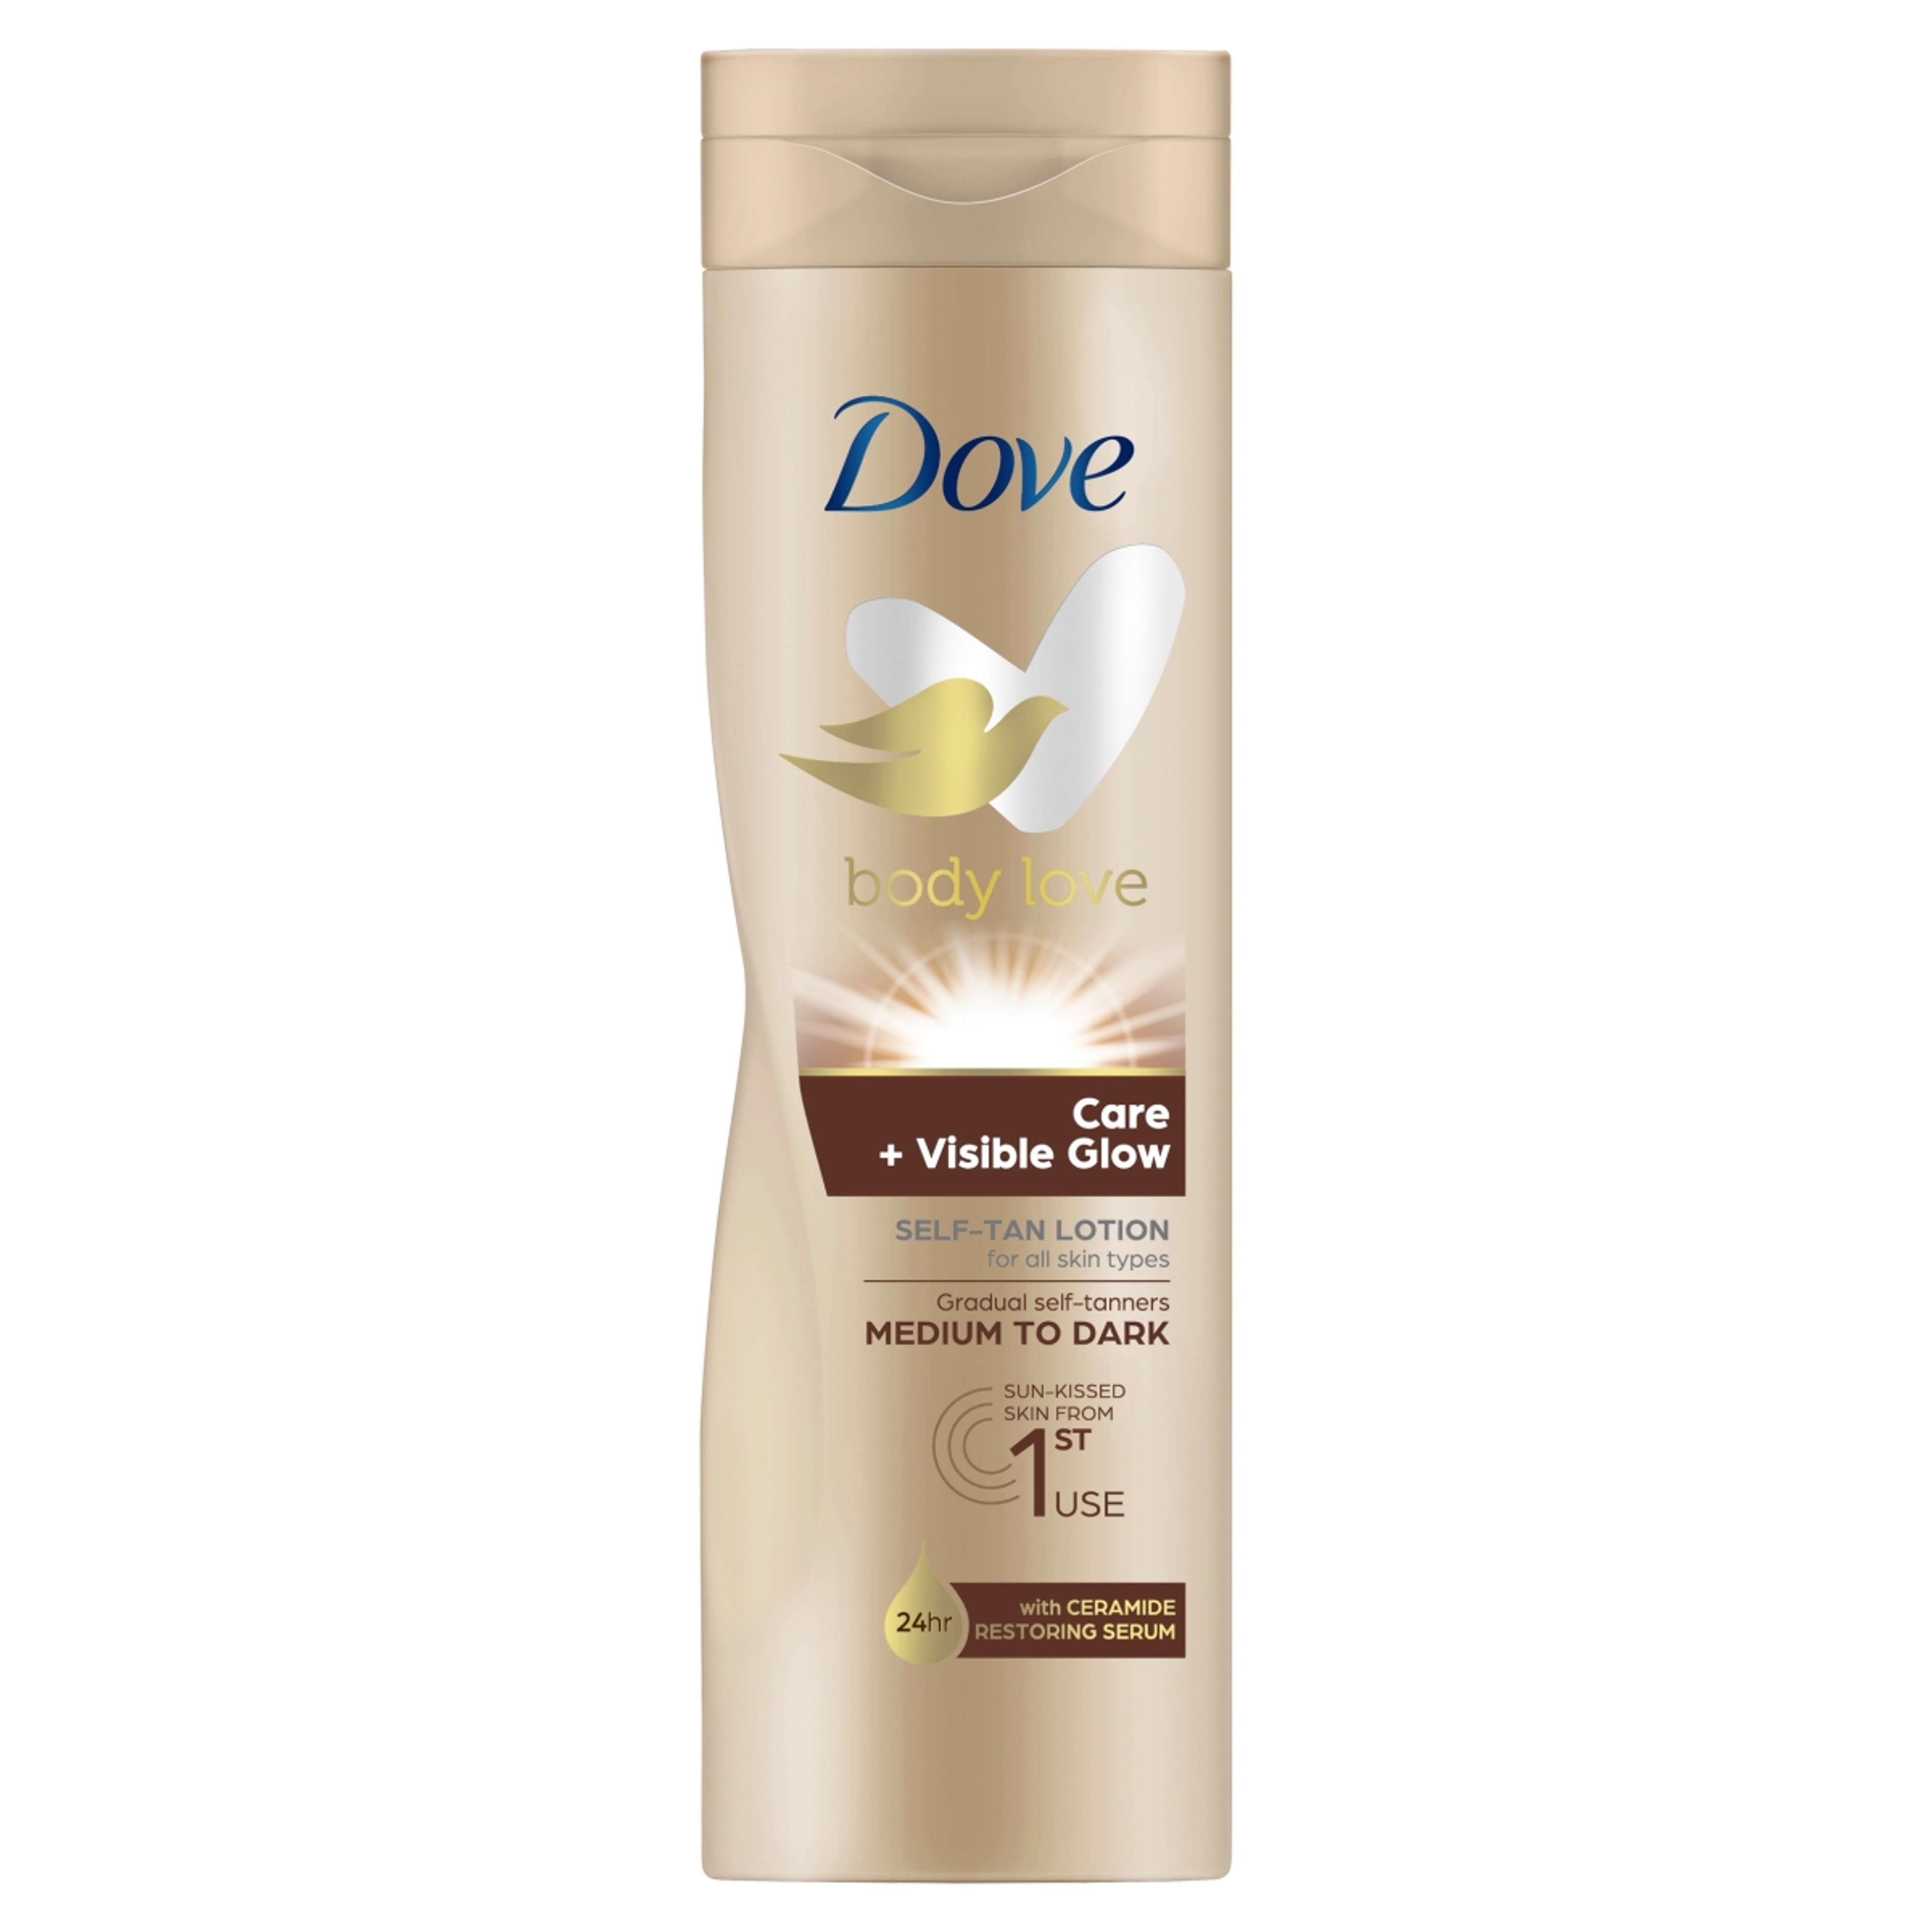 Dove Body Love Care + Visible Glow önbarnító testápoló a közepes-sötét árnyalatú bőrért - 250 ml